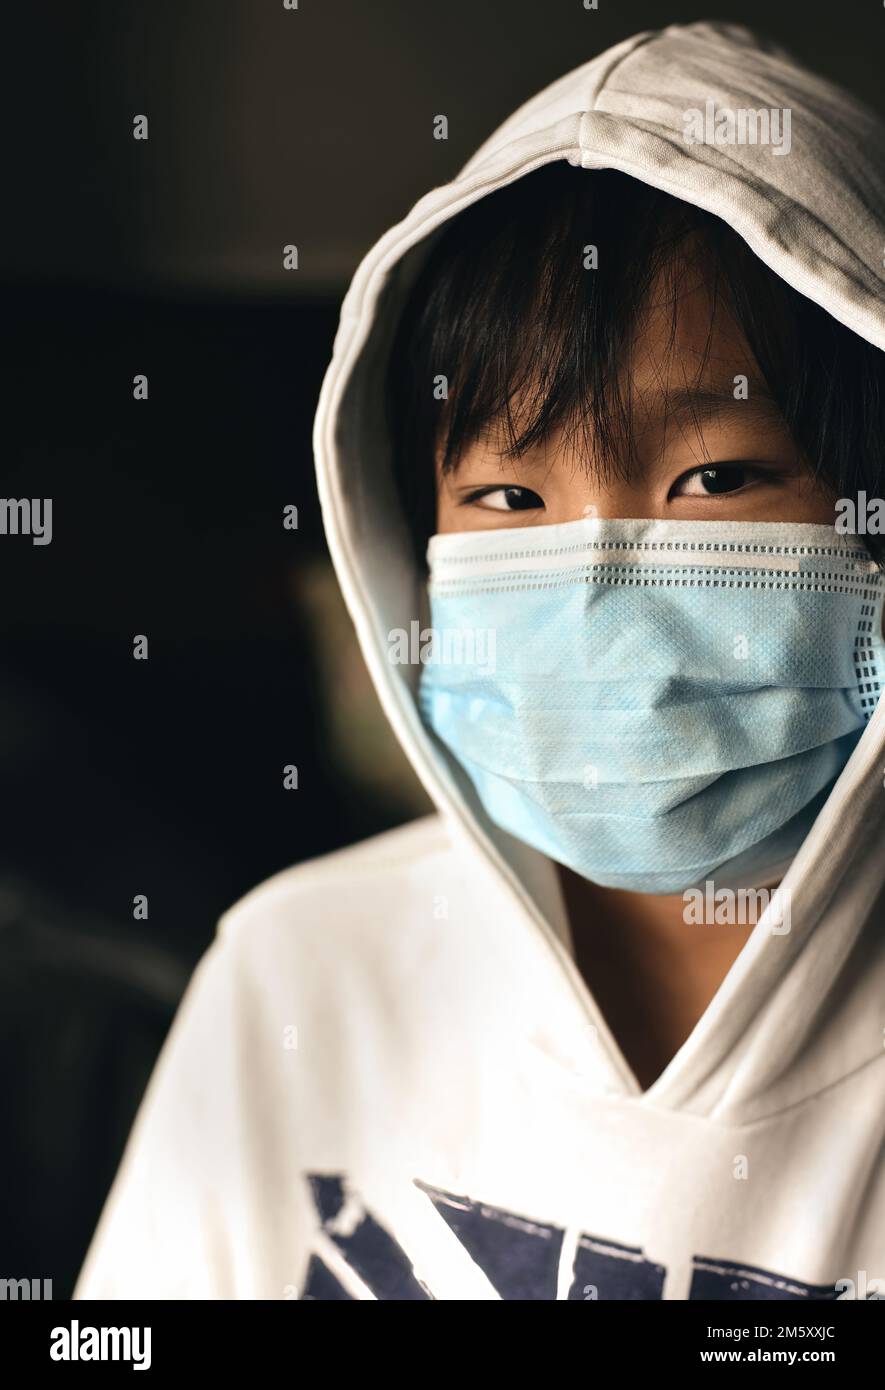 Un garçon asiatique portant un masque de protection regarde la caméra. Virus concept et confinement en Asie Banque D'Images